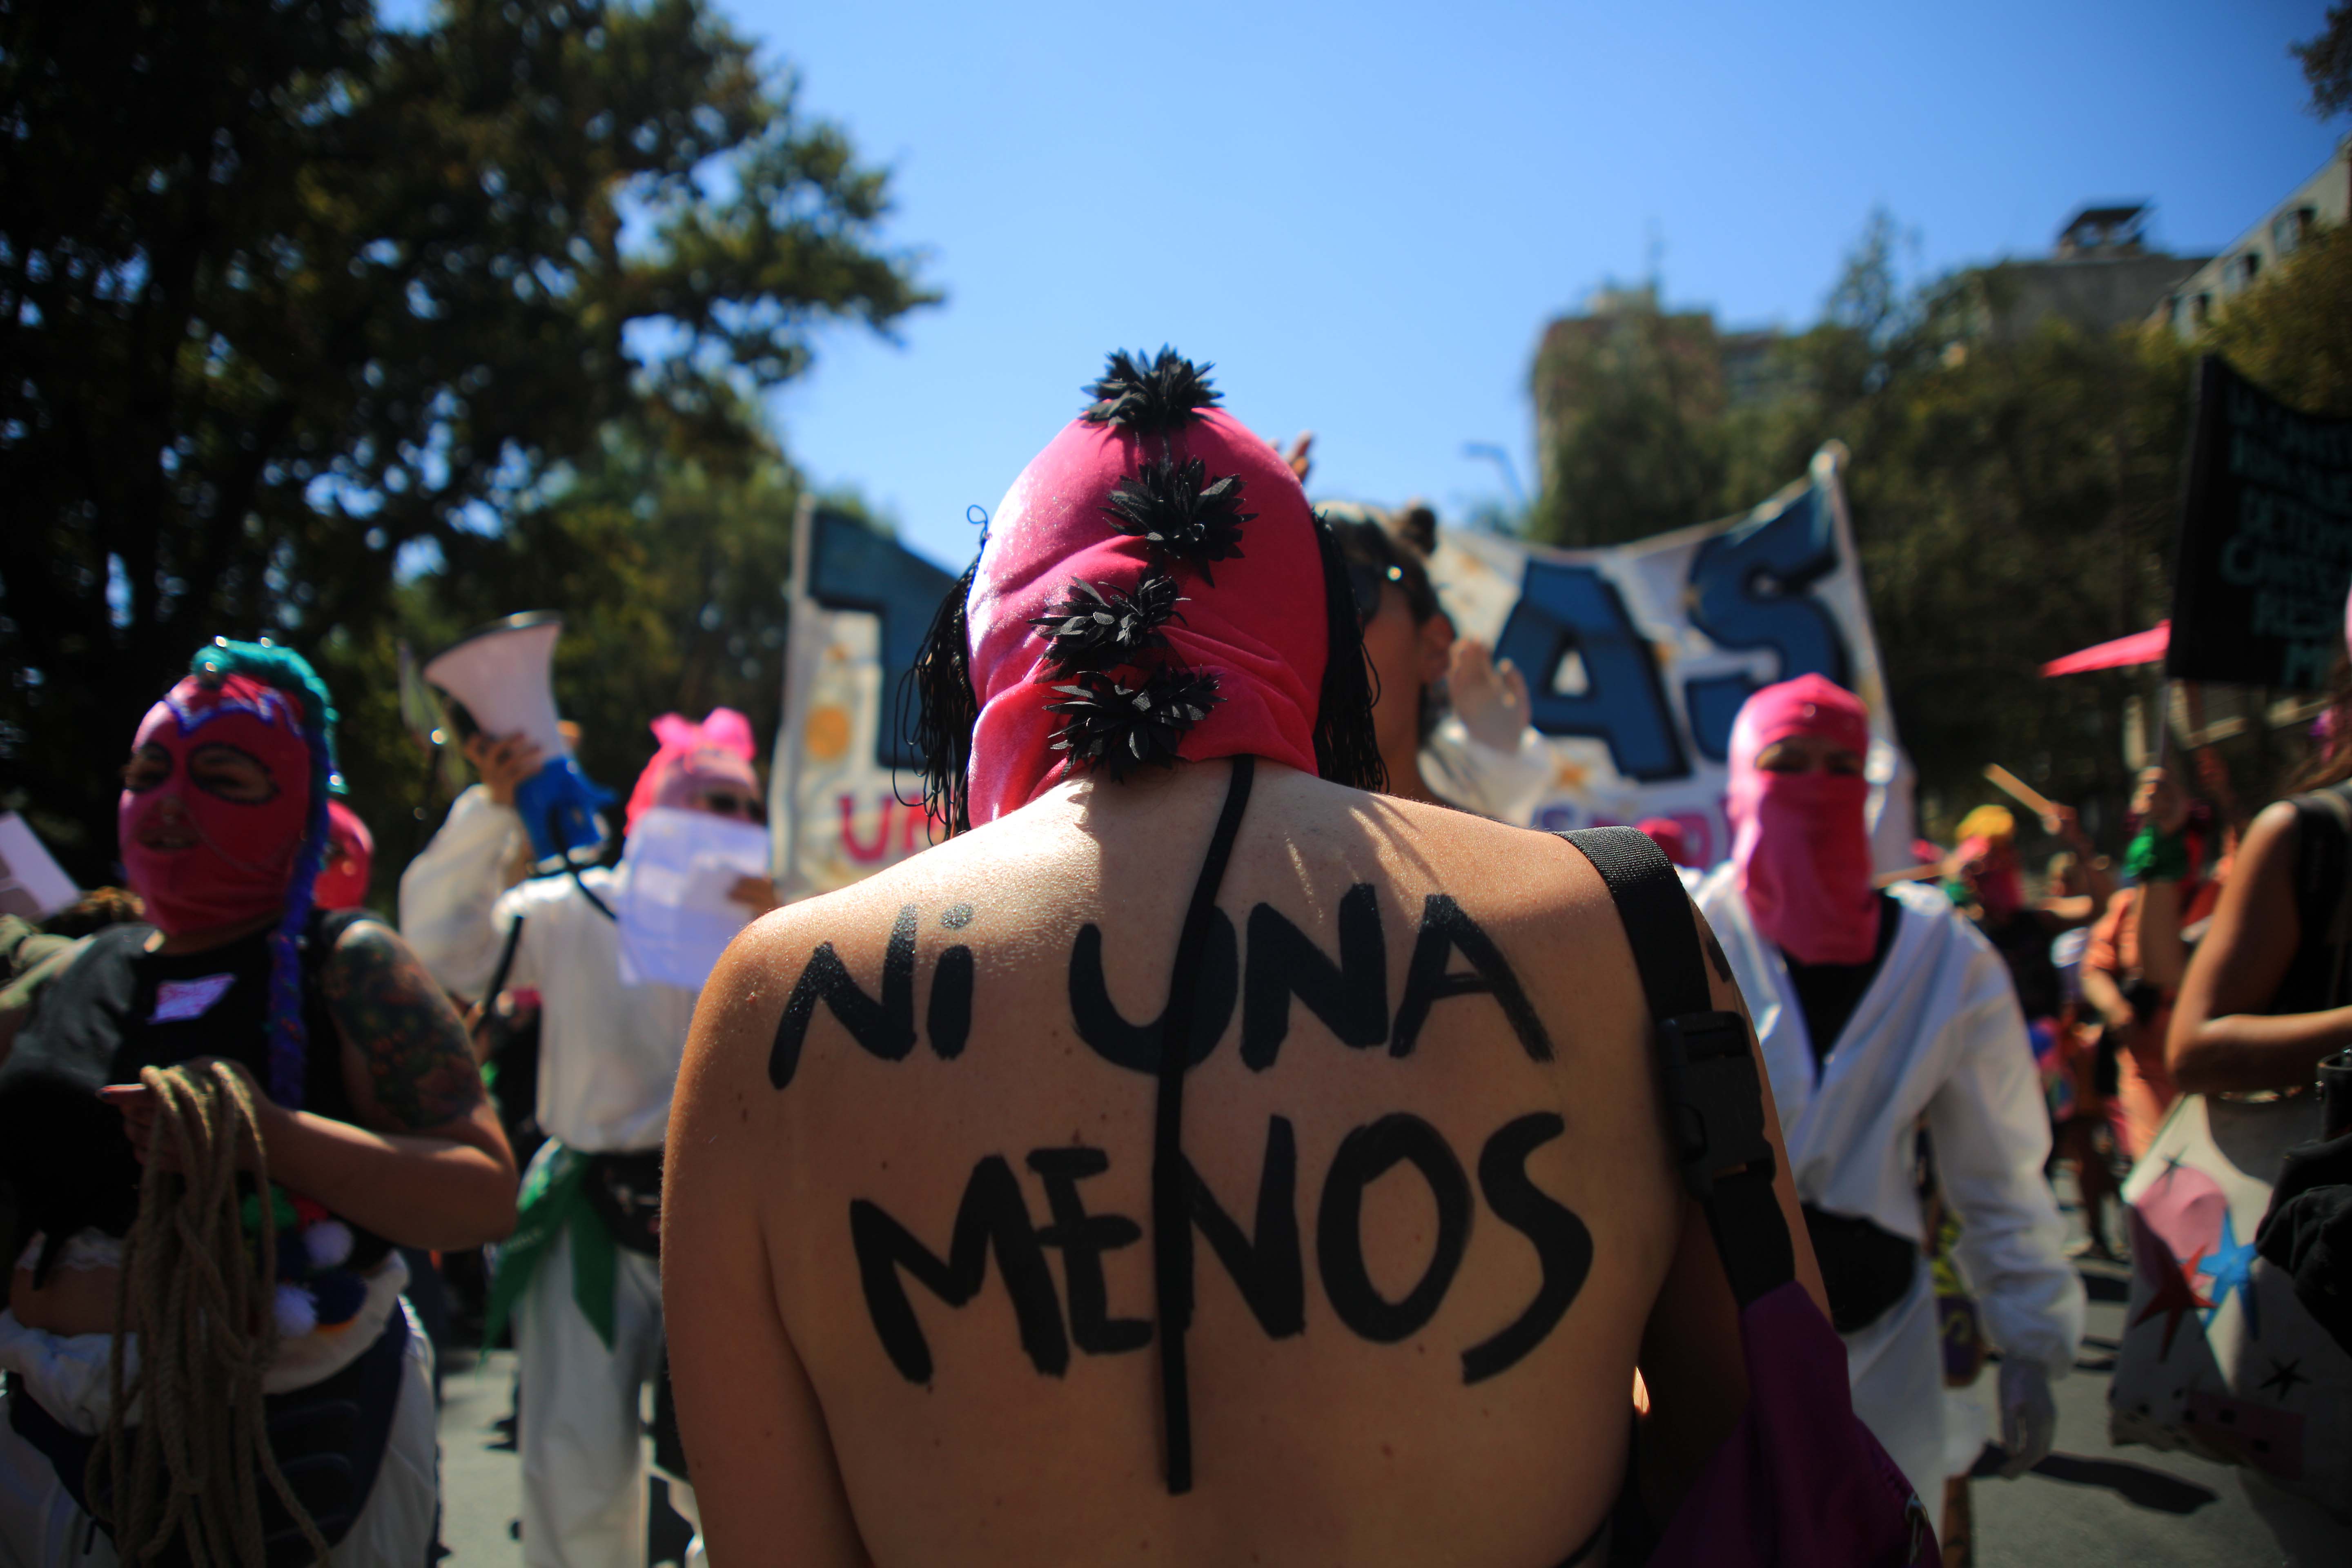 08 De Marzo De 2020/SANTIAGO

Espalda Rayada De Mujer Con Capucha Rosada, Durante Segunda Marcha Feminista Convocada Por La Coordinadora 8M, En Plaza Italia, Santiago.

FOTO: JOSÉ FRANCISCO ZÚÑIGA/AGENCIAUNO